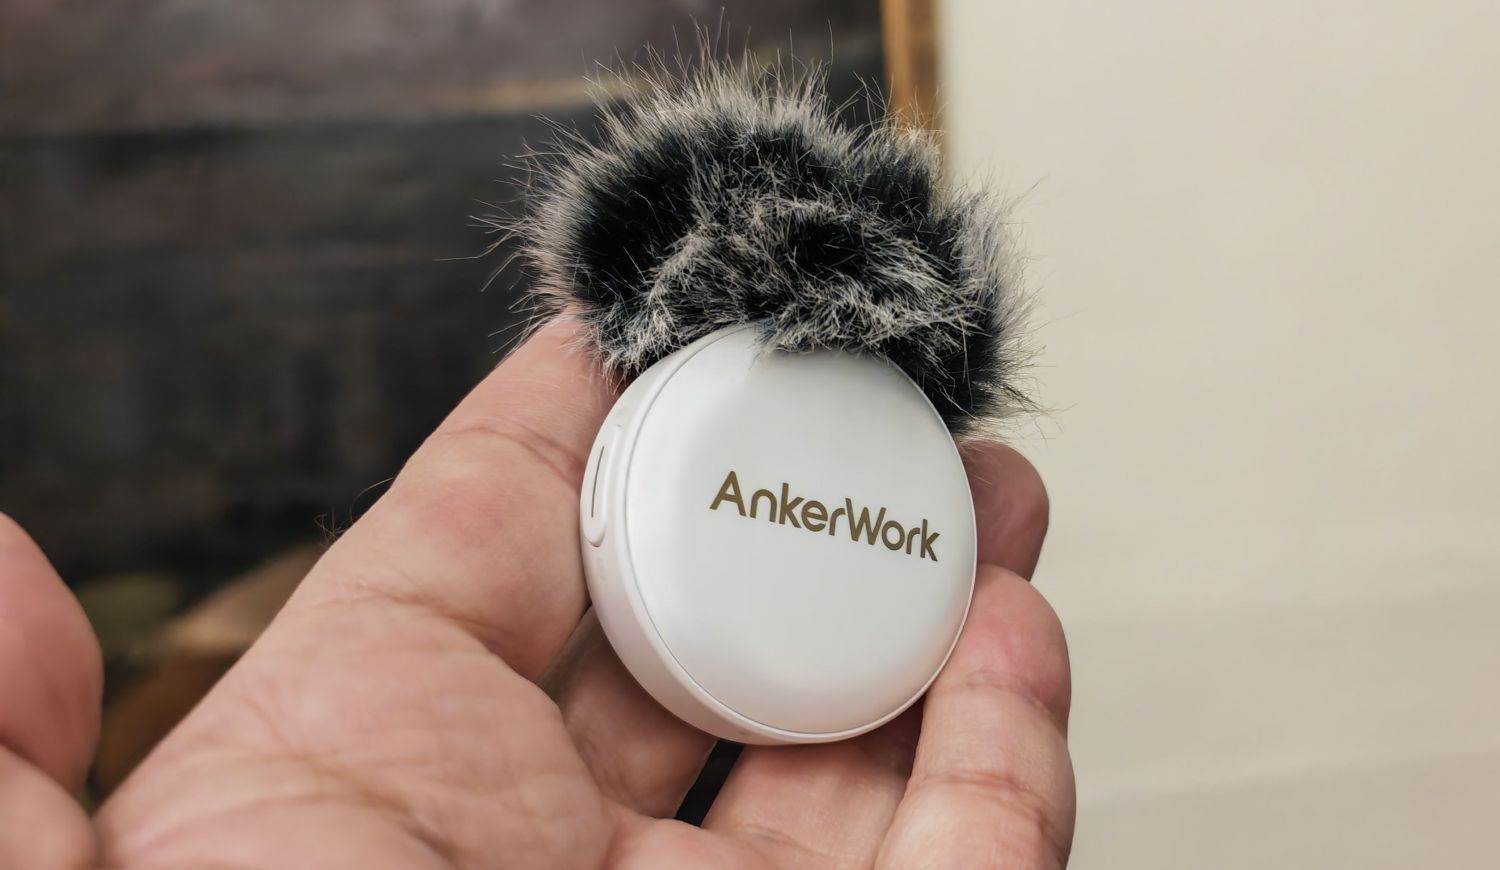  AnkerWork M650 Wireless Microphone (15).jpg 